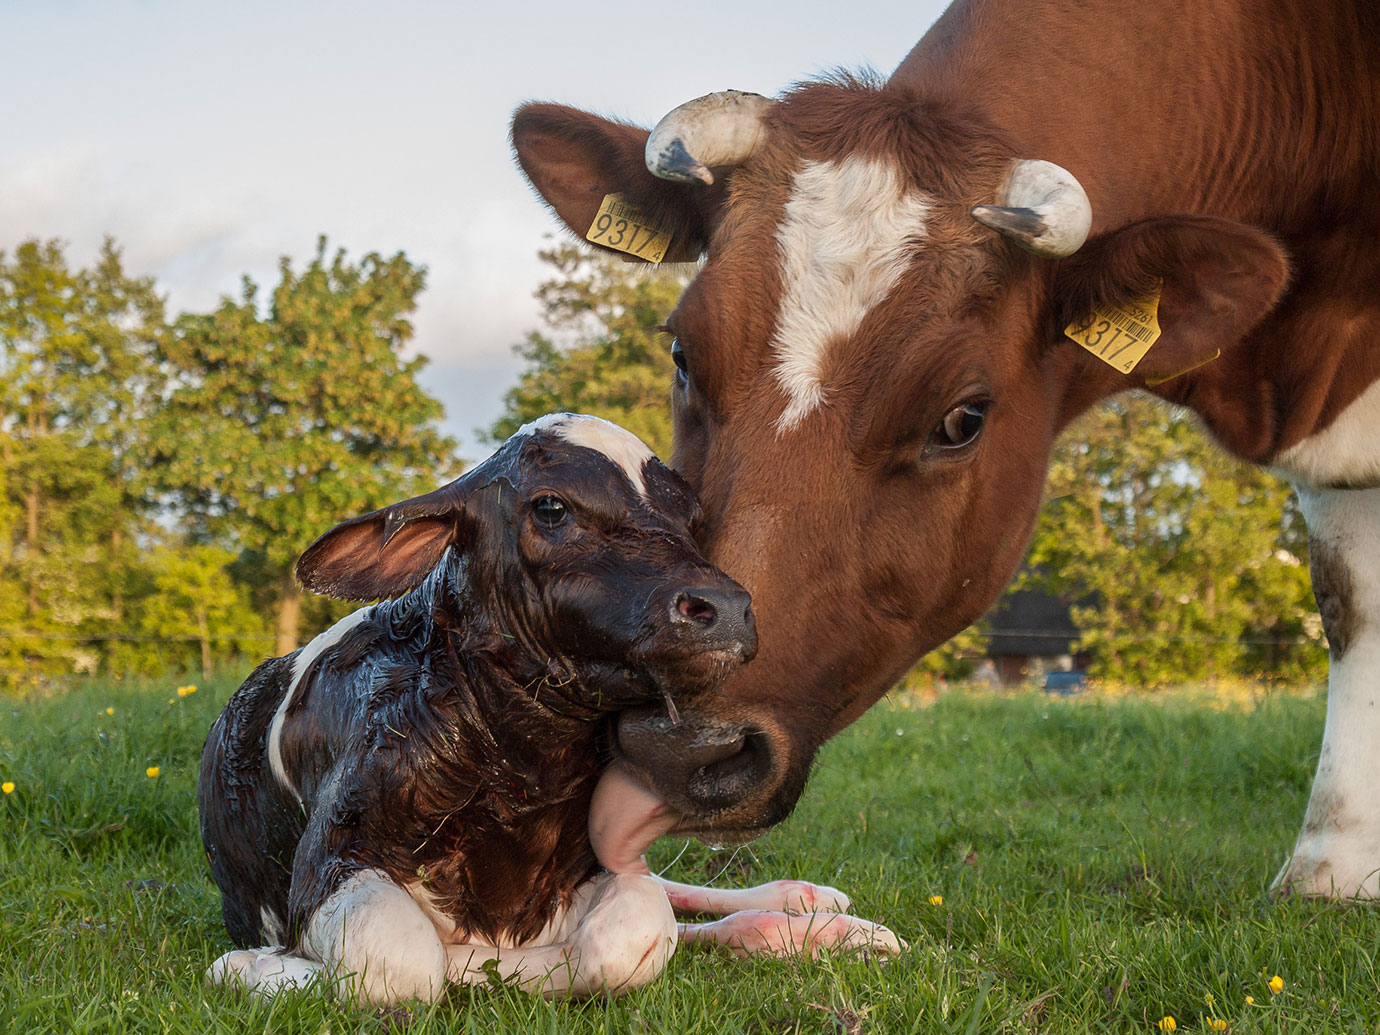 Cow licking her newborn calf